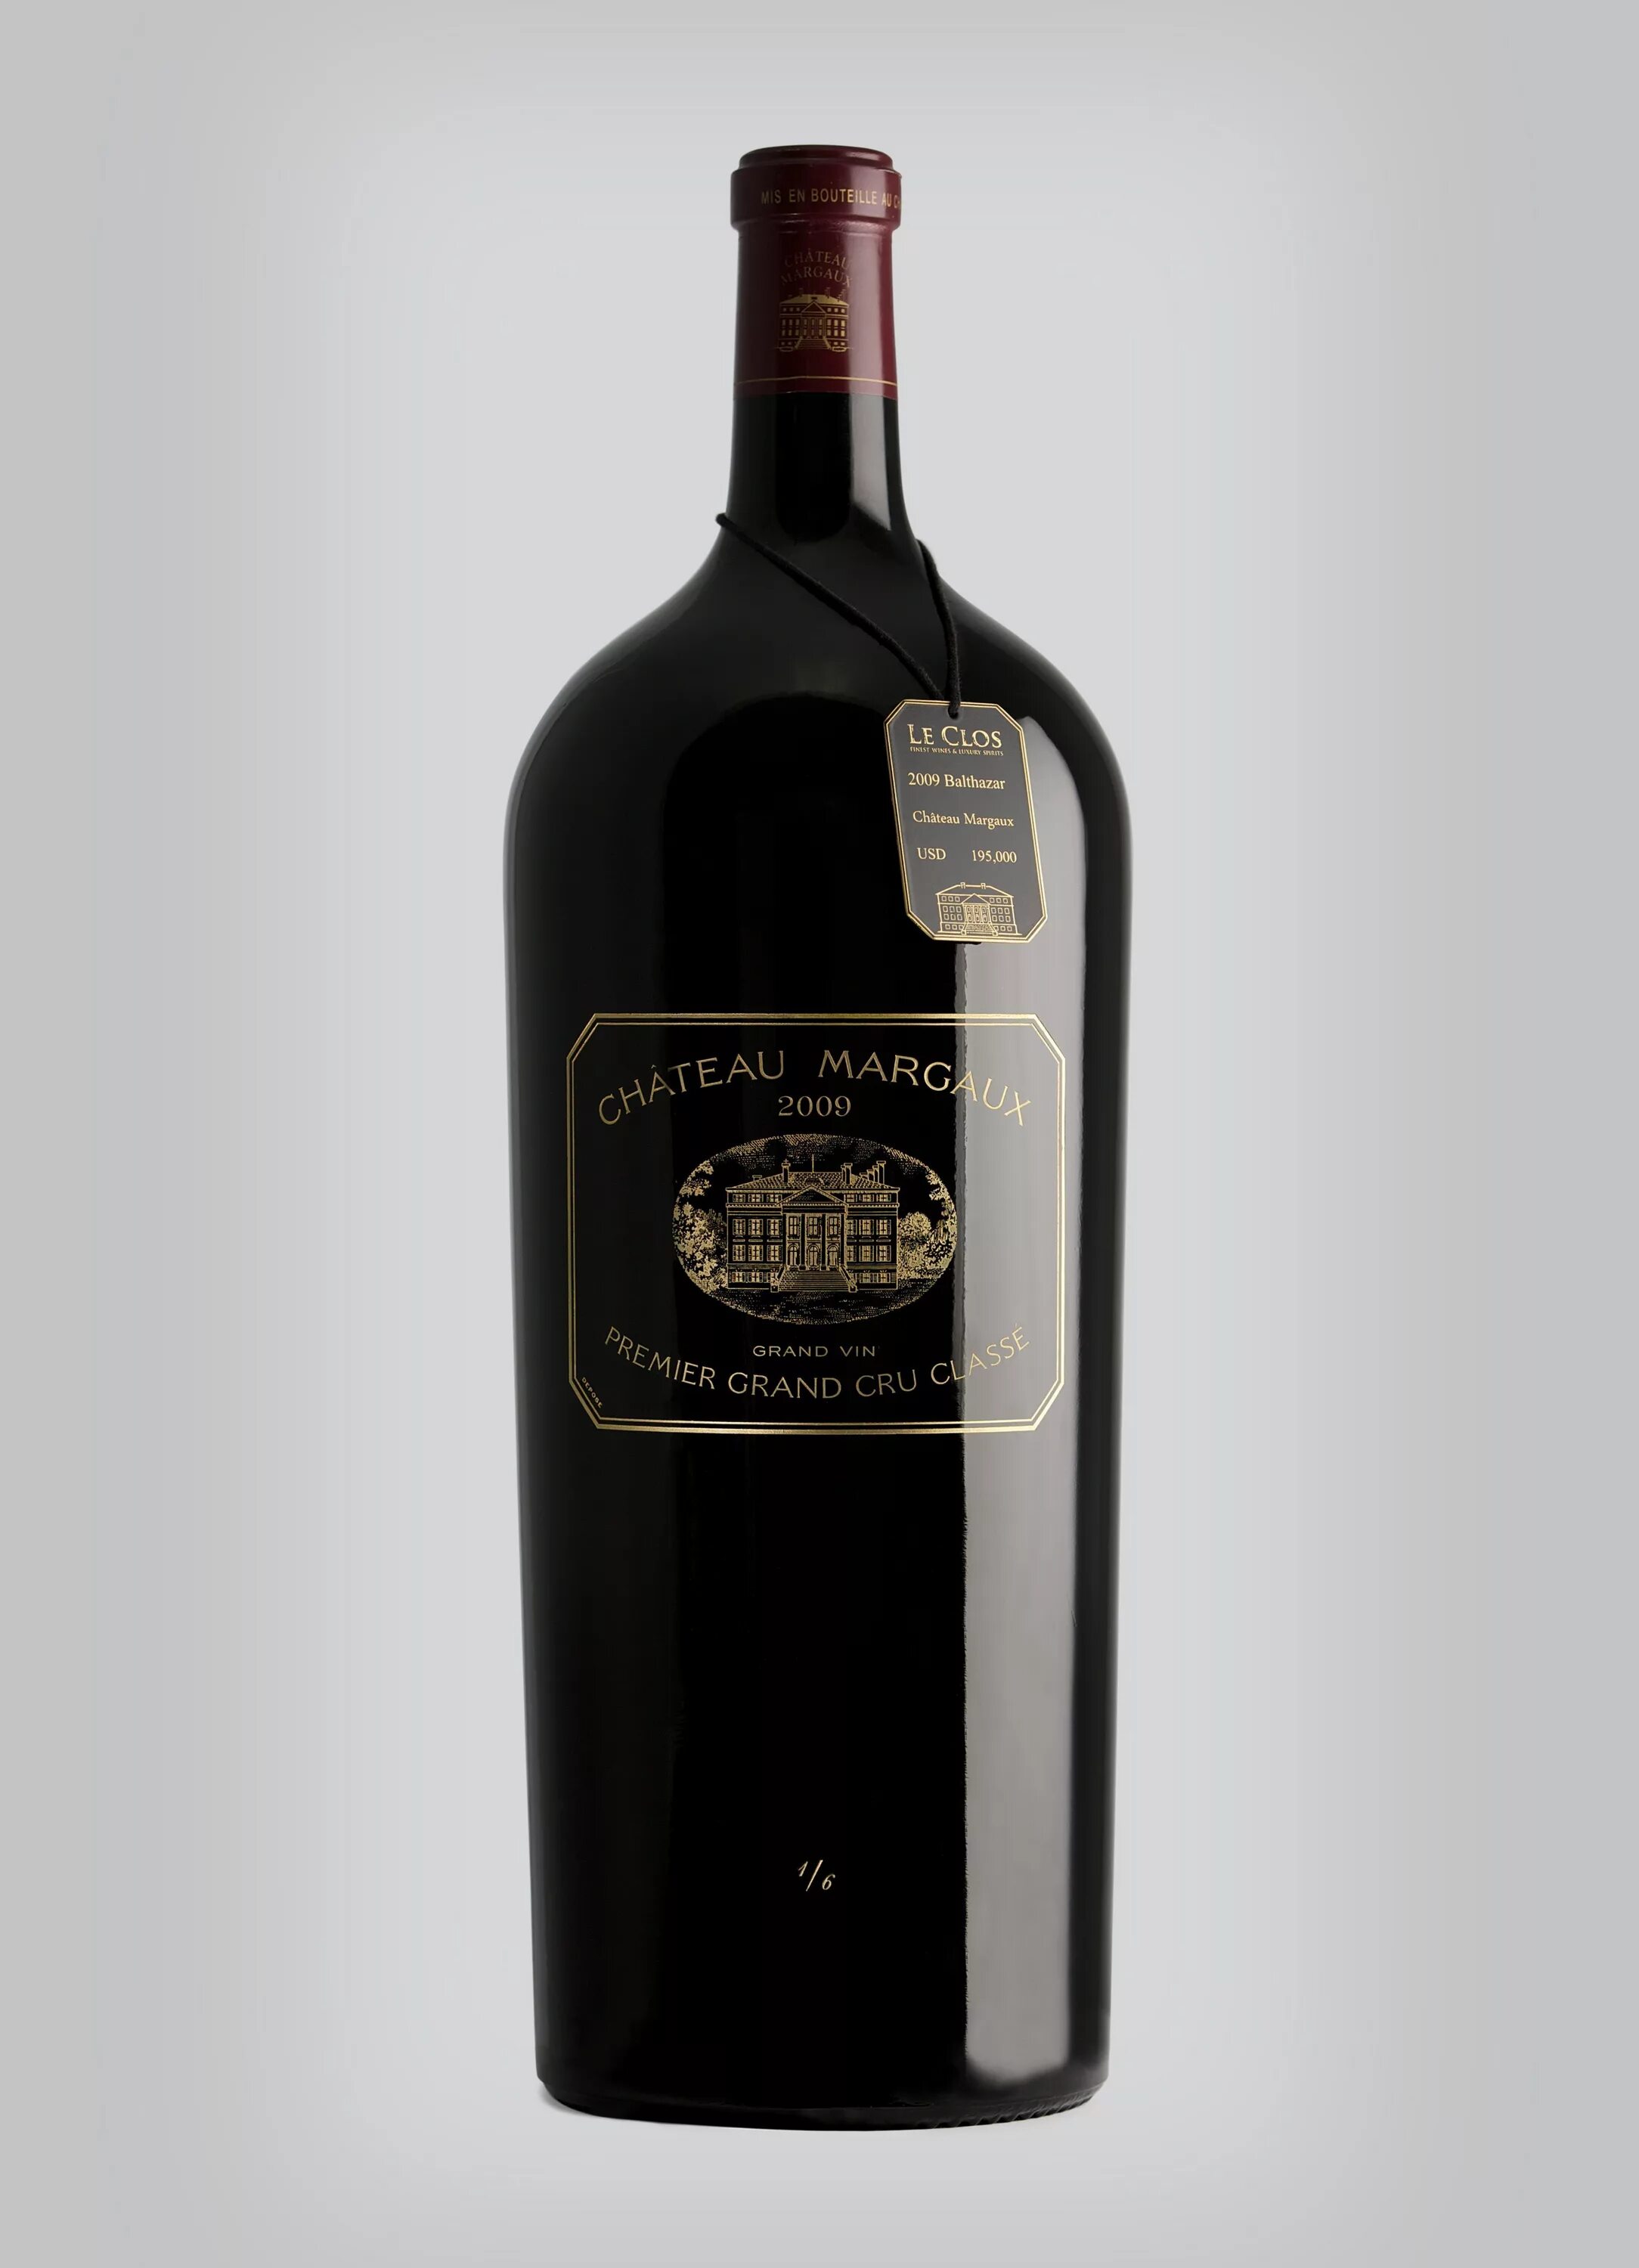 Цена самого дорогого вина. Шато Брюс вино. Chateau Margaux 1787. Chateau Margaux 1787 года. Самое дорогое вино.